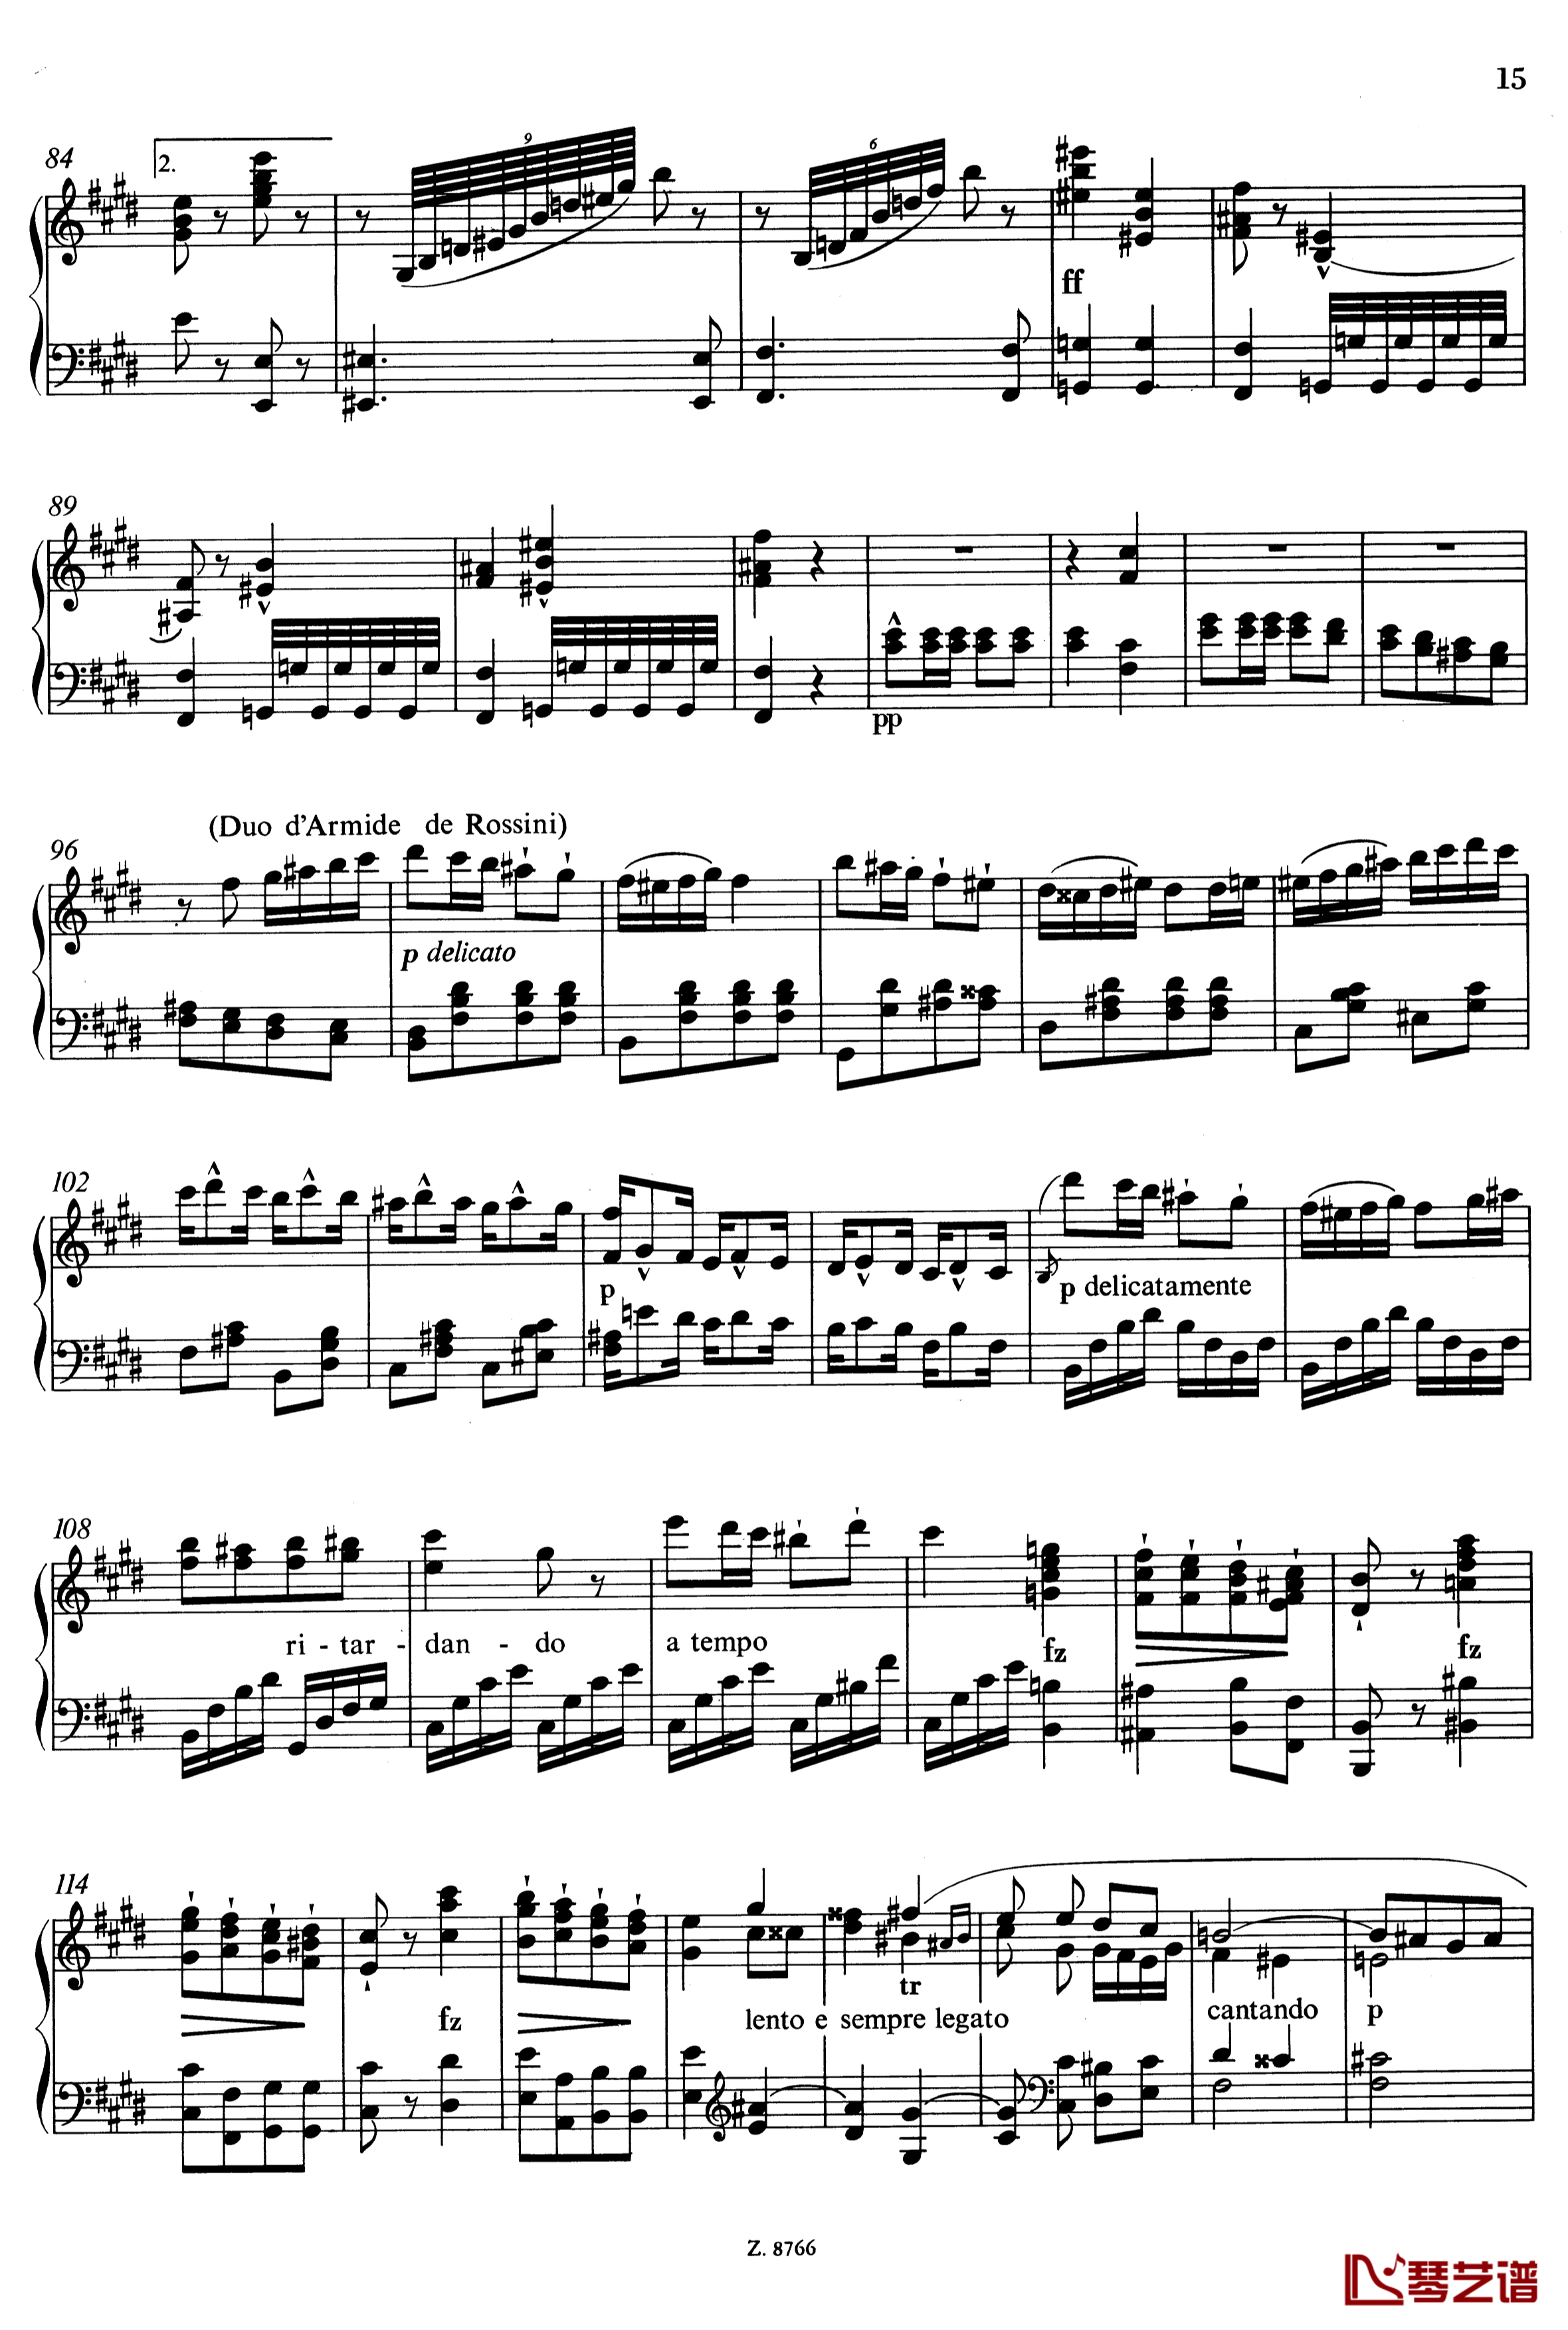 罗西尼主题华丽即兴曲钢琴谱-S.150-李斯特4